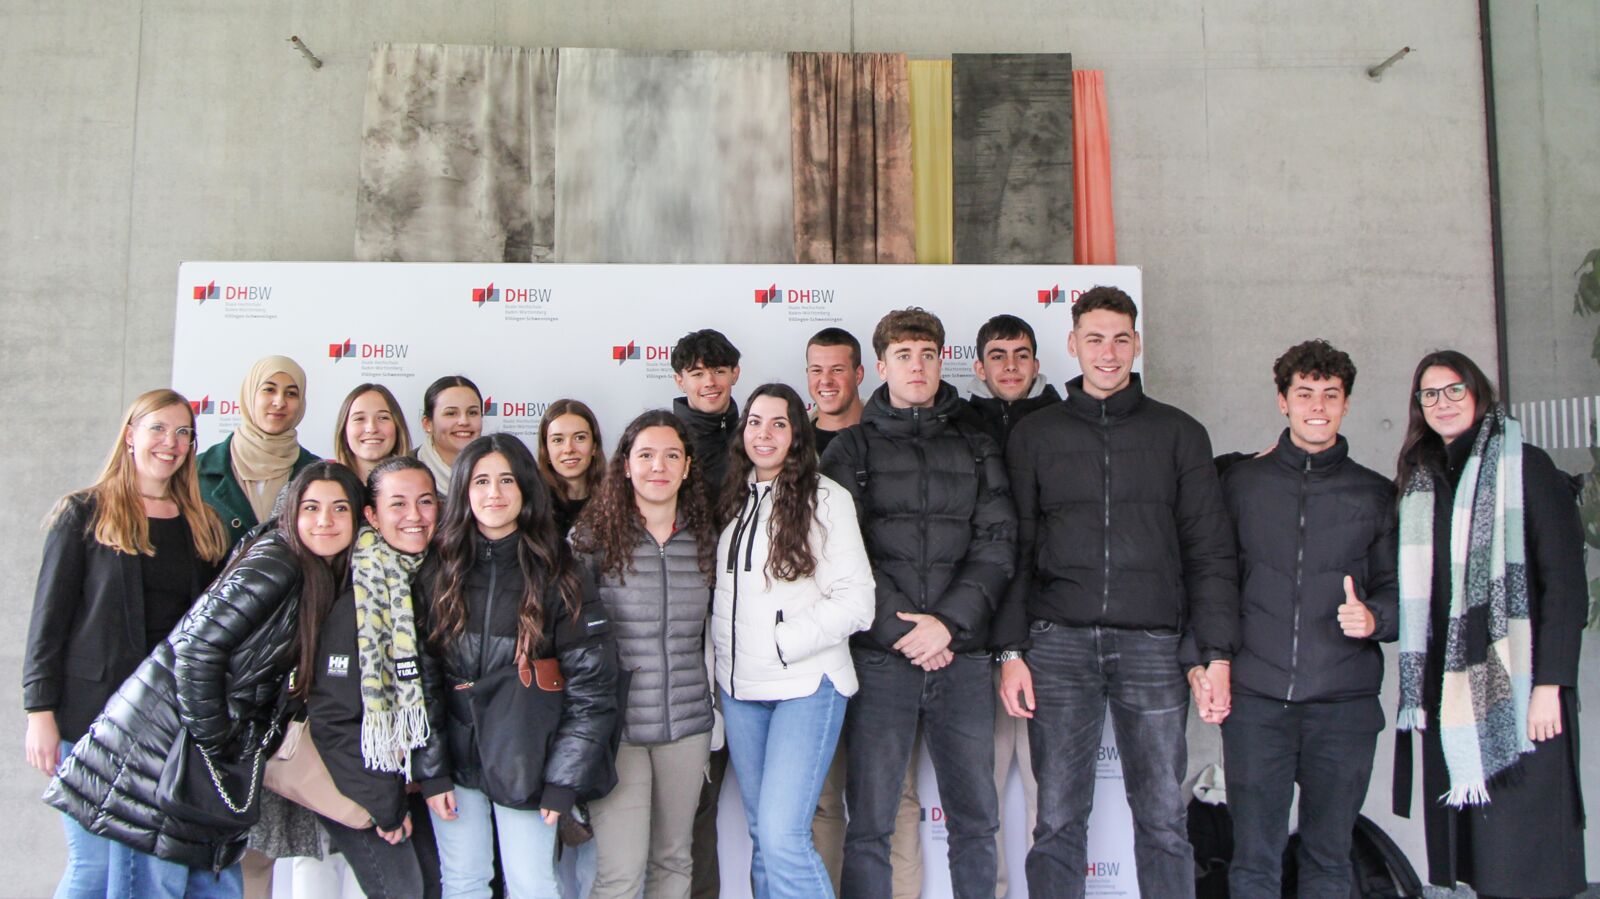 Gruppenfoto der spanischen Gaststudierenden der Universitat de Girona in den Gebäuden der DHBW Villingen-Schwenningen.